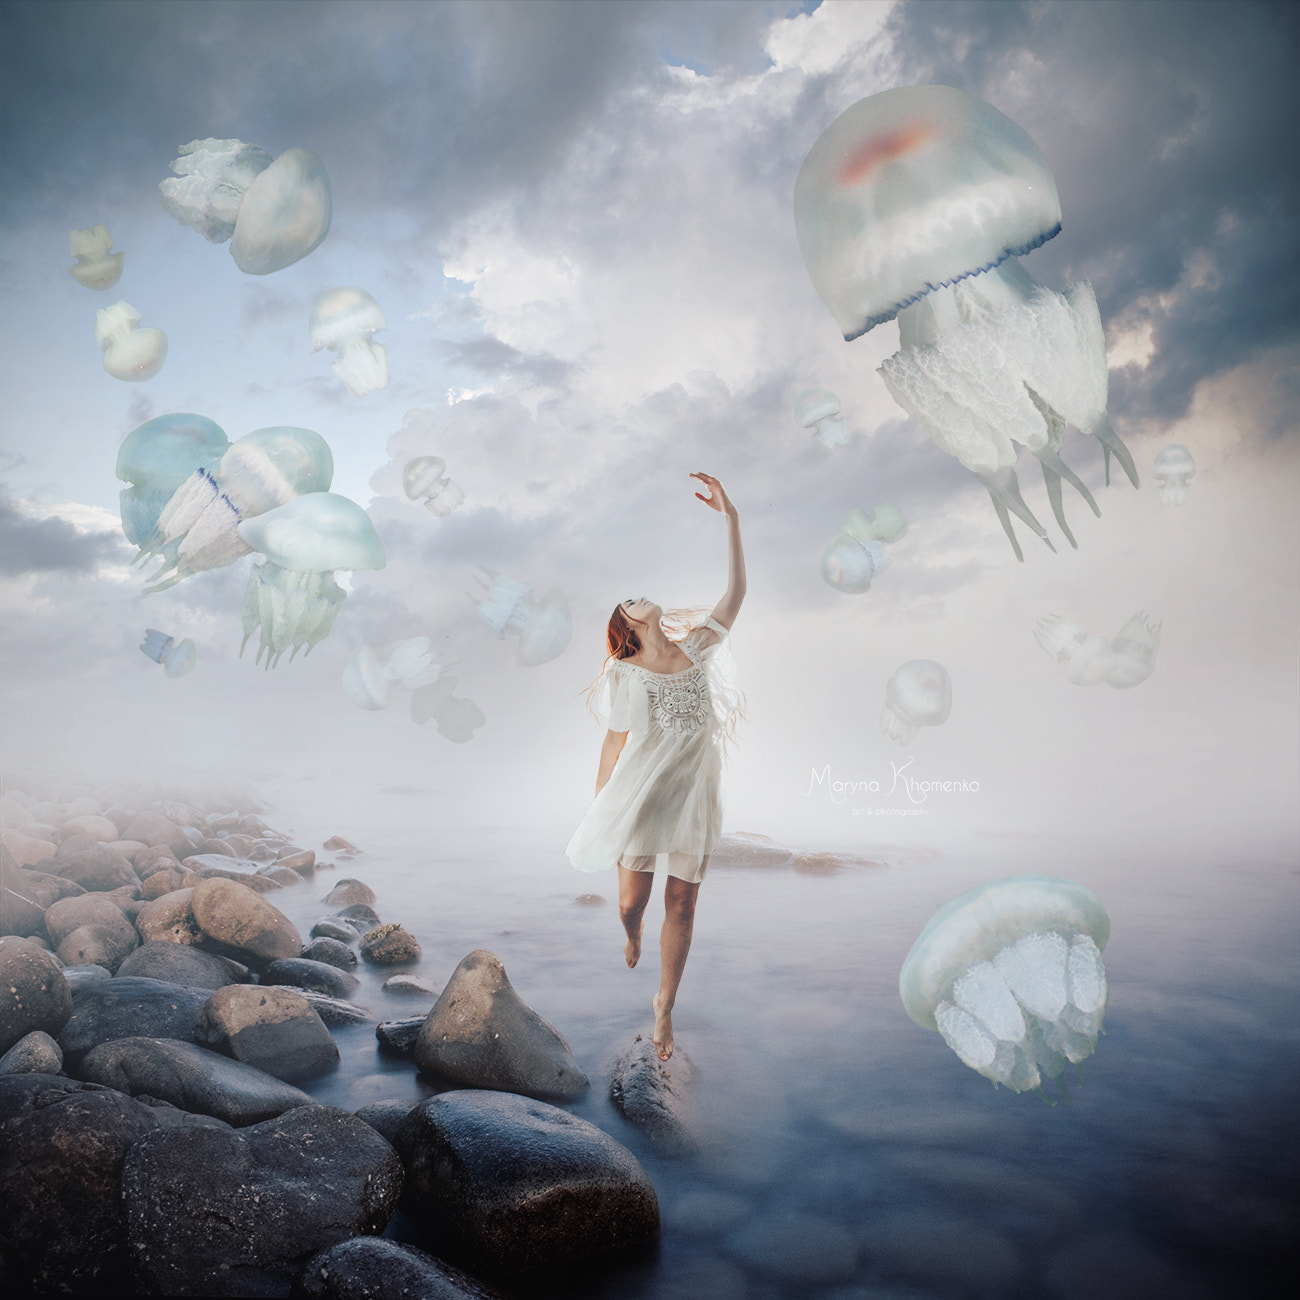 Фото Девушка стоит над водой, приподняв руку к парящим в небе медузам, by Maryna Khomenko